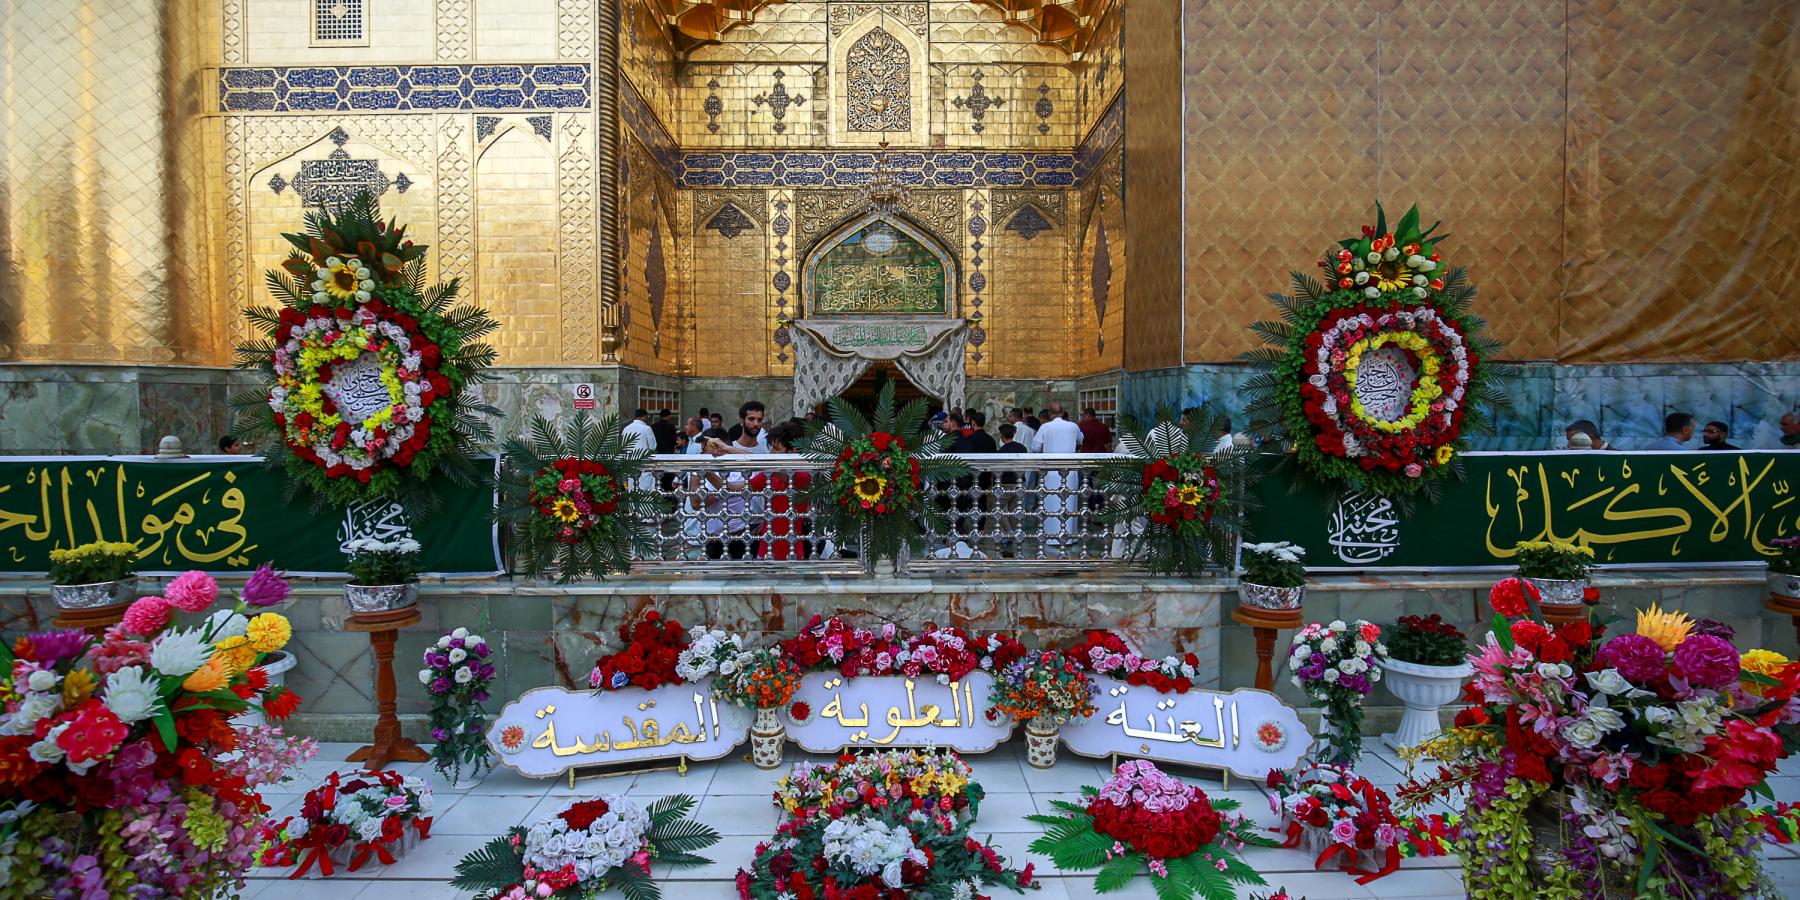 الصحن العلوي المطهر يزدان بأكثر من ستة آلاف زهرة بمناسبة ولادة سبط الرسول الأكرم (ص)الإمام الحسن المجتبى (ع) 